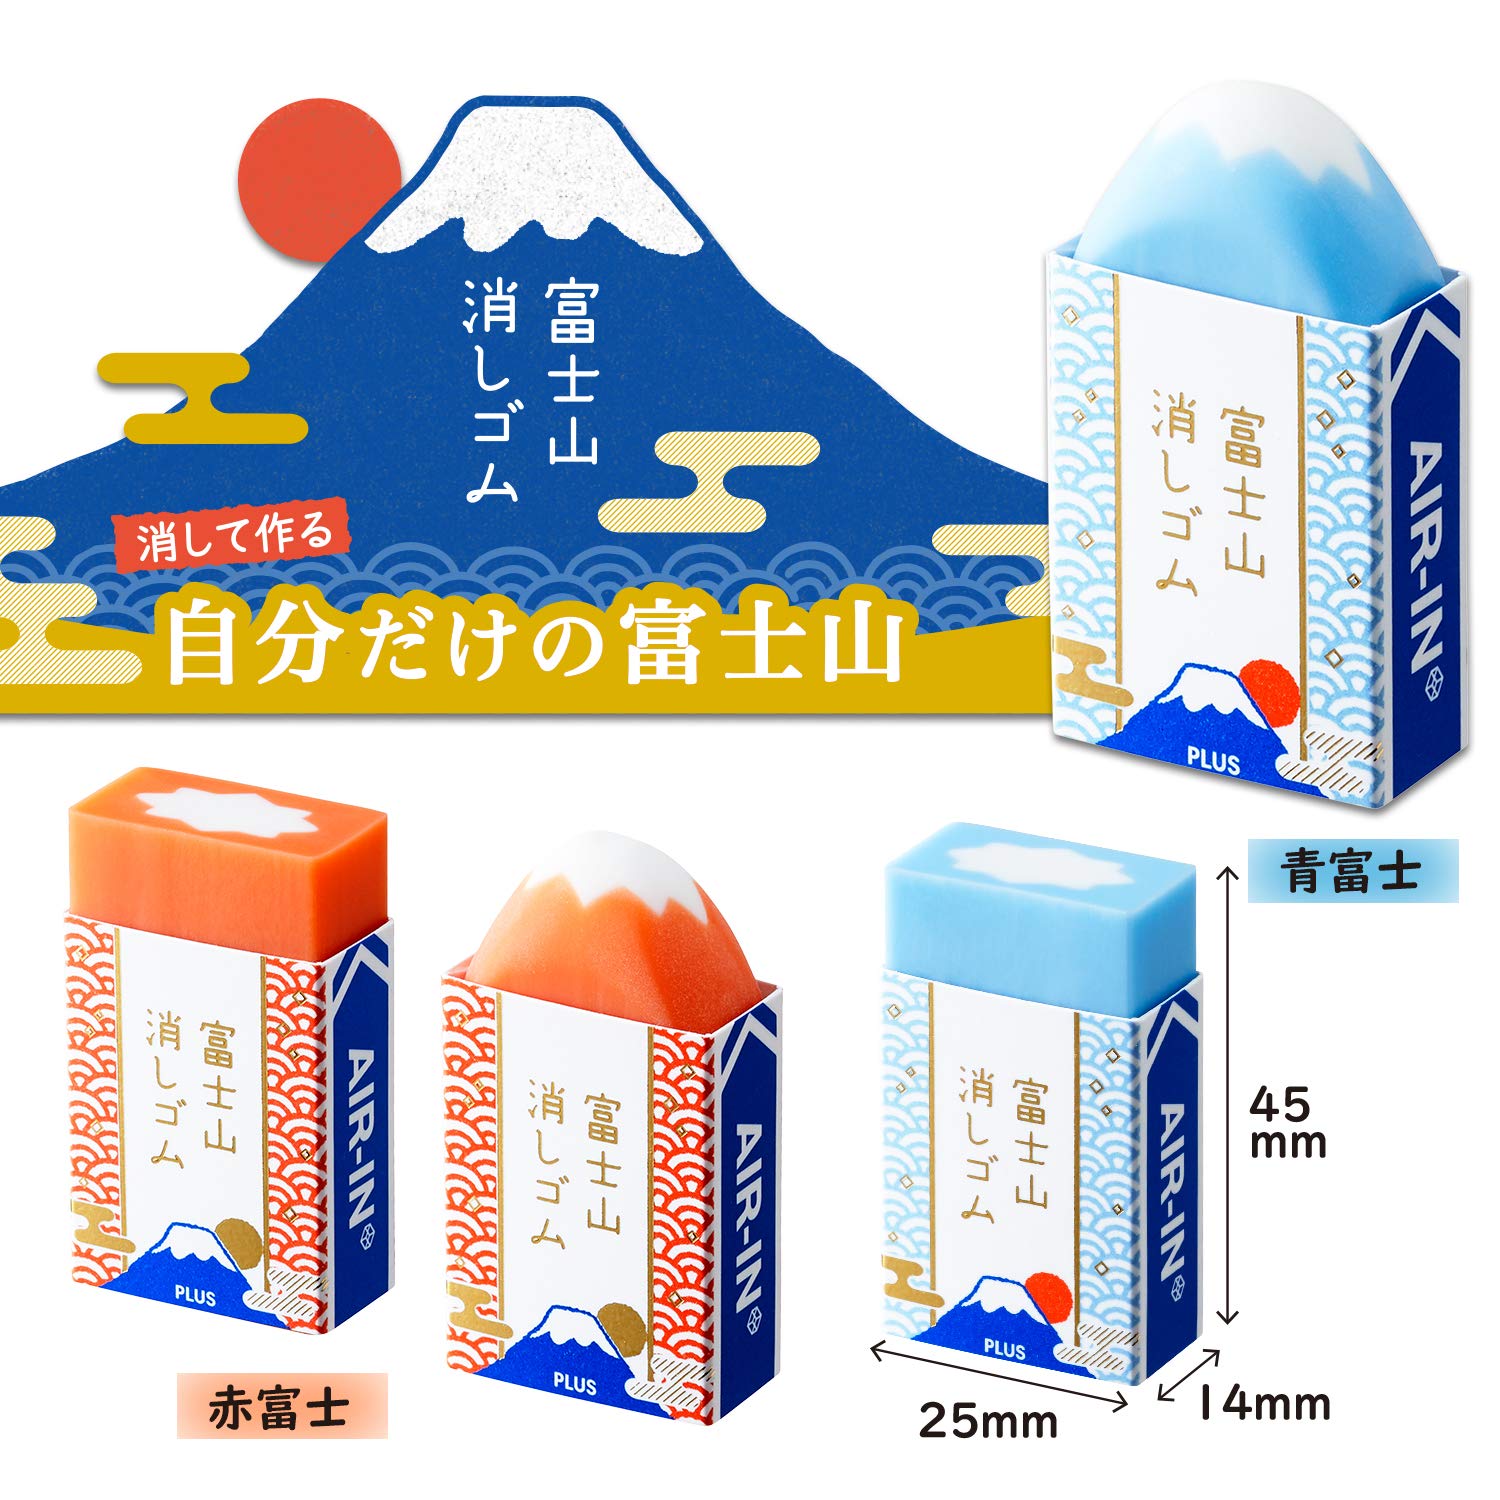 Cute Mount Fuji Eraser